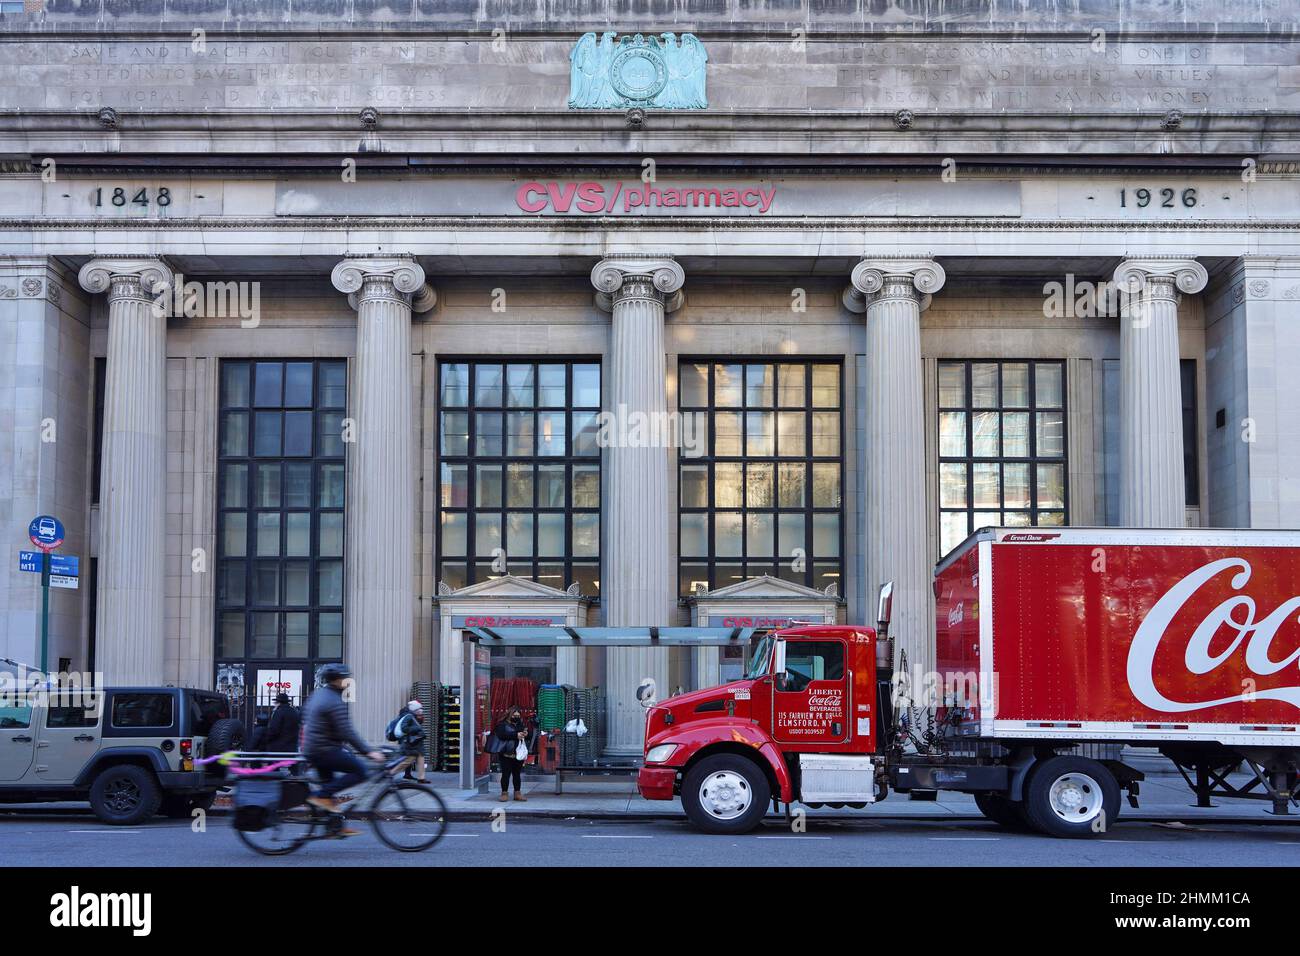 Preservazione architettonica a New York, con edificio bancario dal 1848 trasformato in farmacia Foto Stock